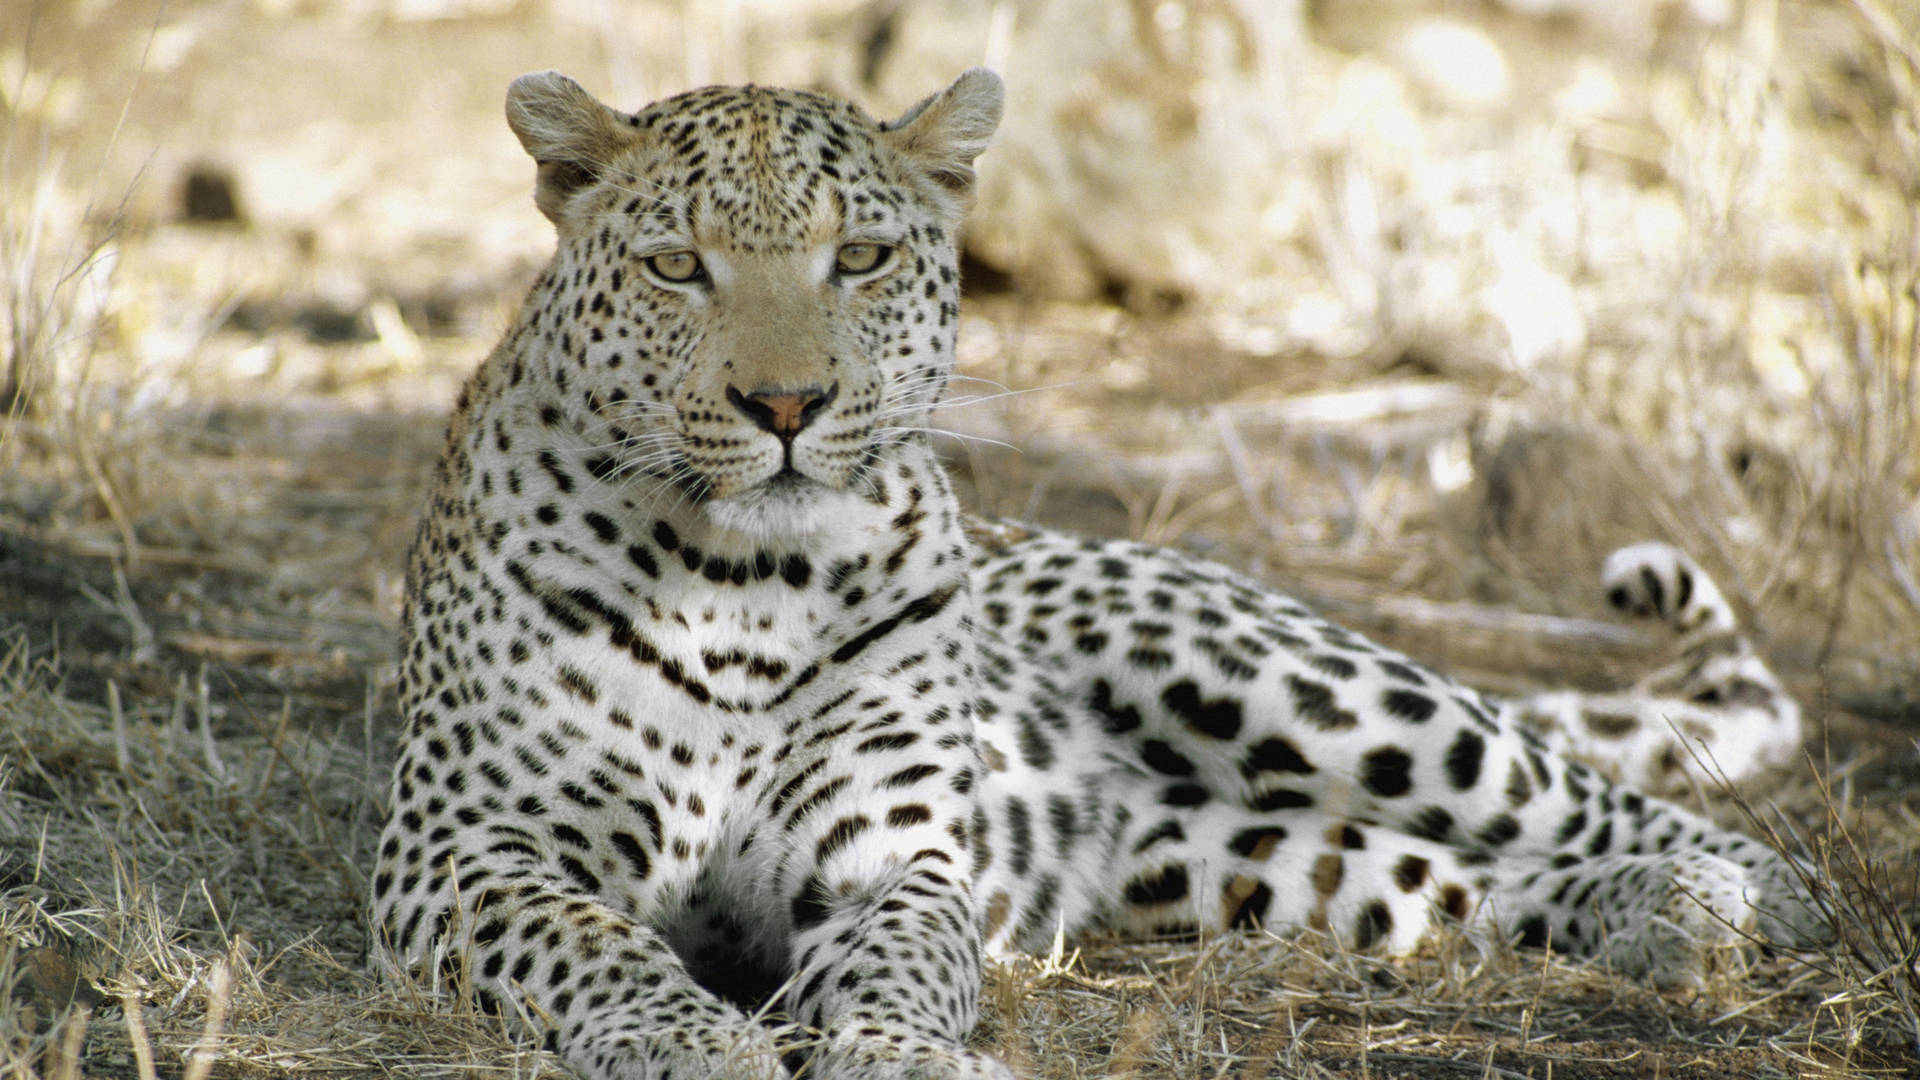 Leopardoda África Em 4k. Papel de Parede